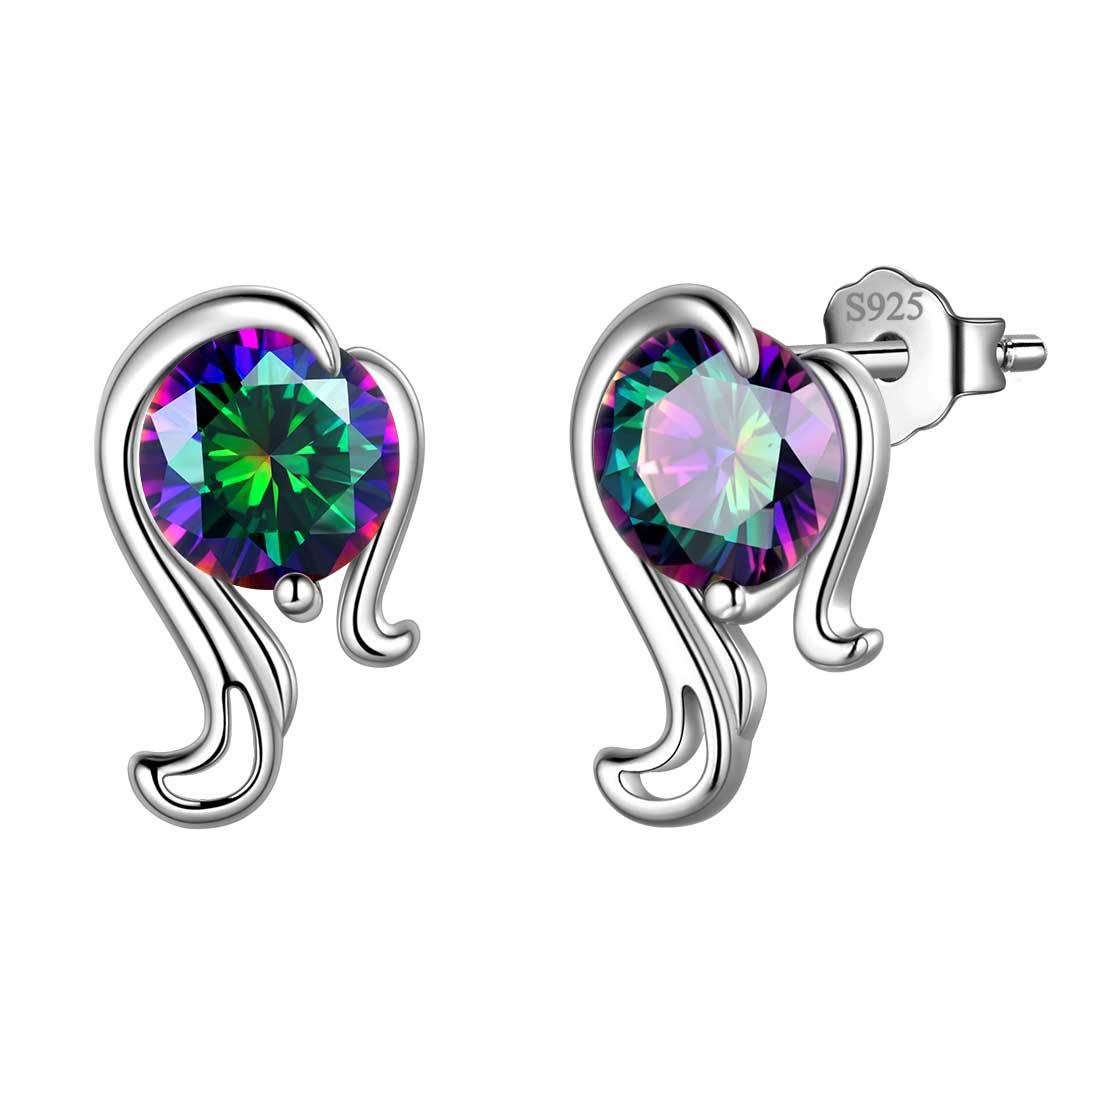 Virgo Stud Earrings Sterling Silver Mystic Rainbow Topaz Aurora Tears Jewelry